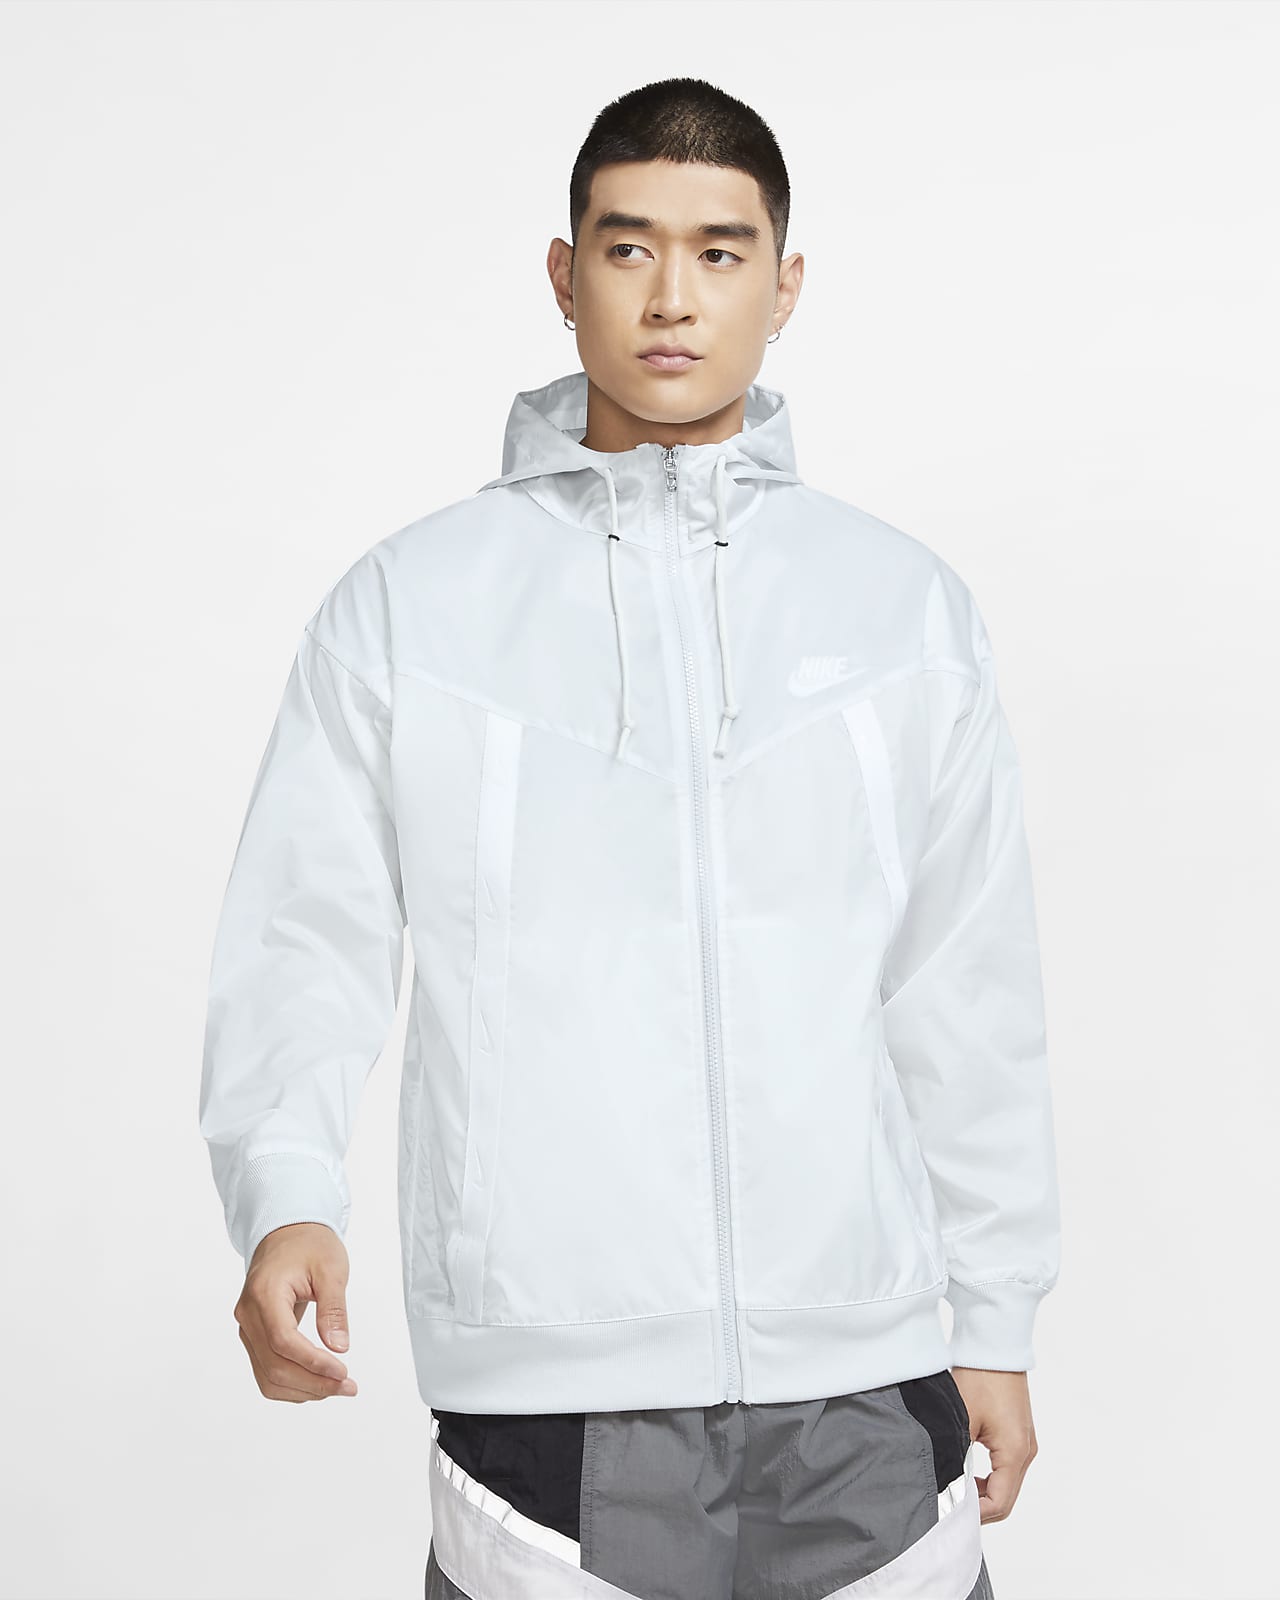 men's nike sportswear windrunner hooded jacket